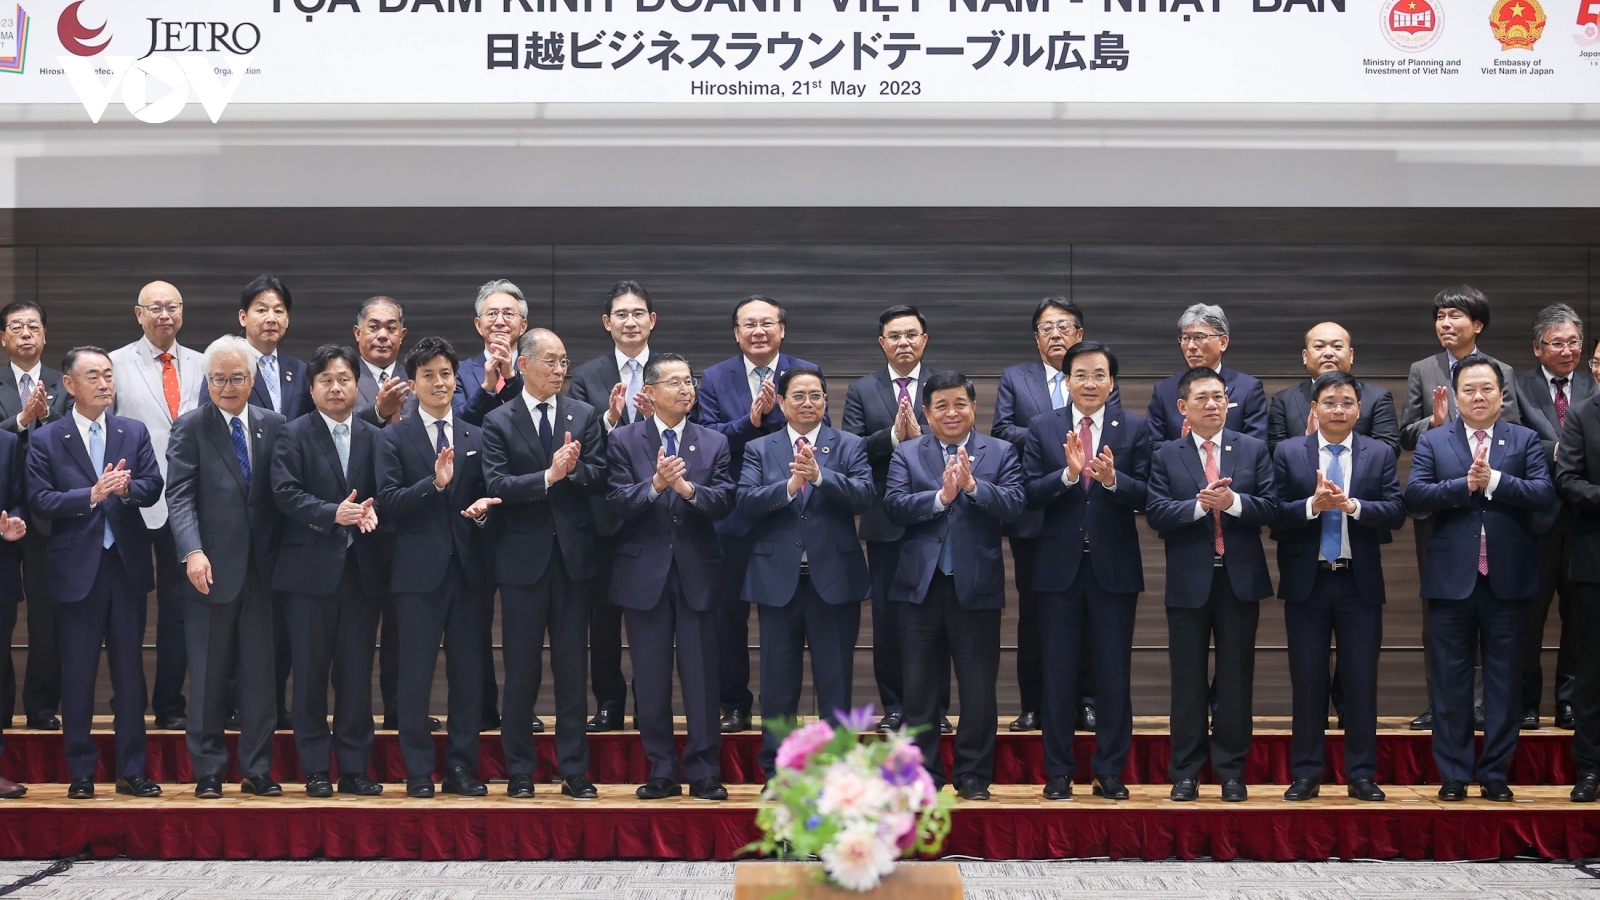 Thủ tướng Chính phủ Phạm Minh Chính kết thúc tốt đẹp chuyến công tác tại Nhật Bản